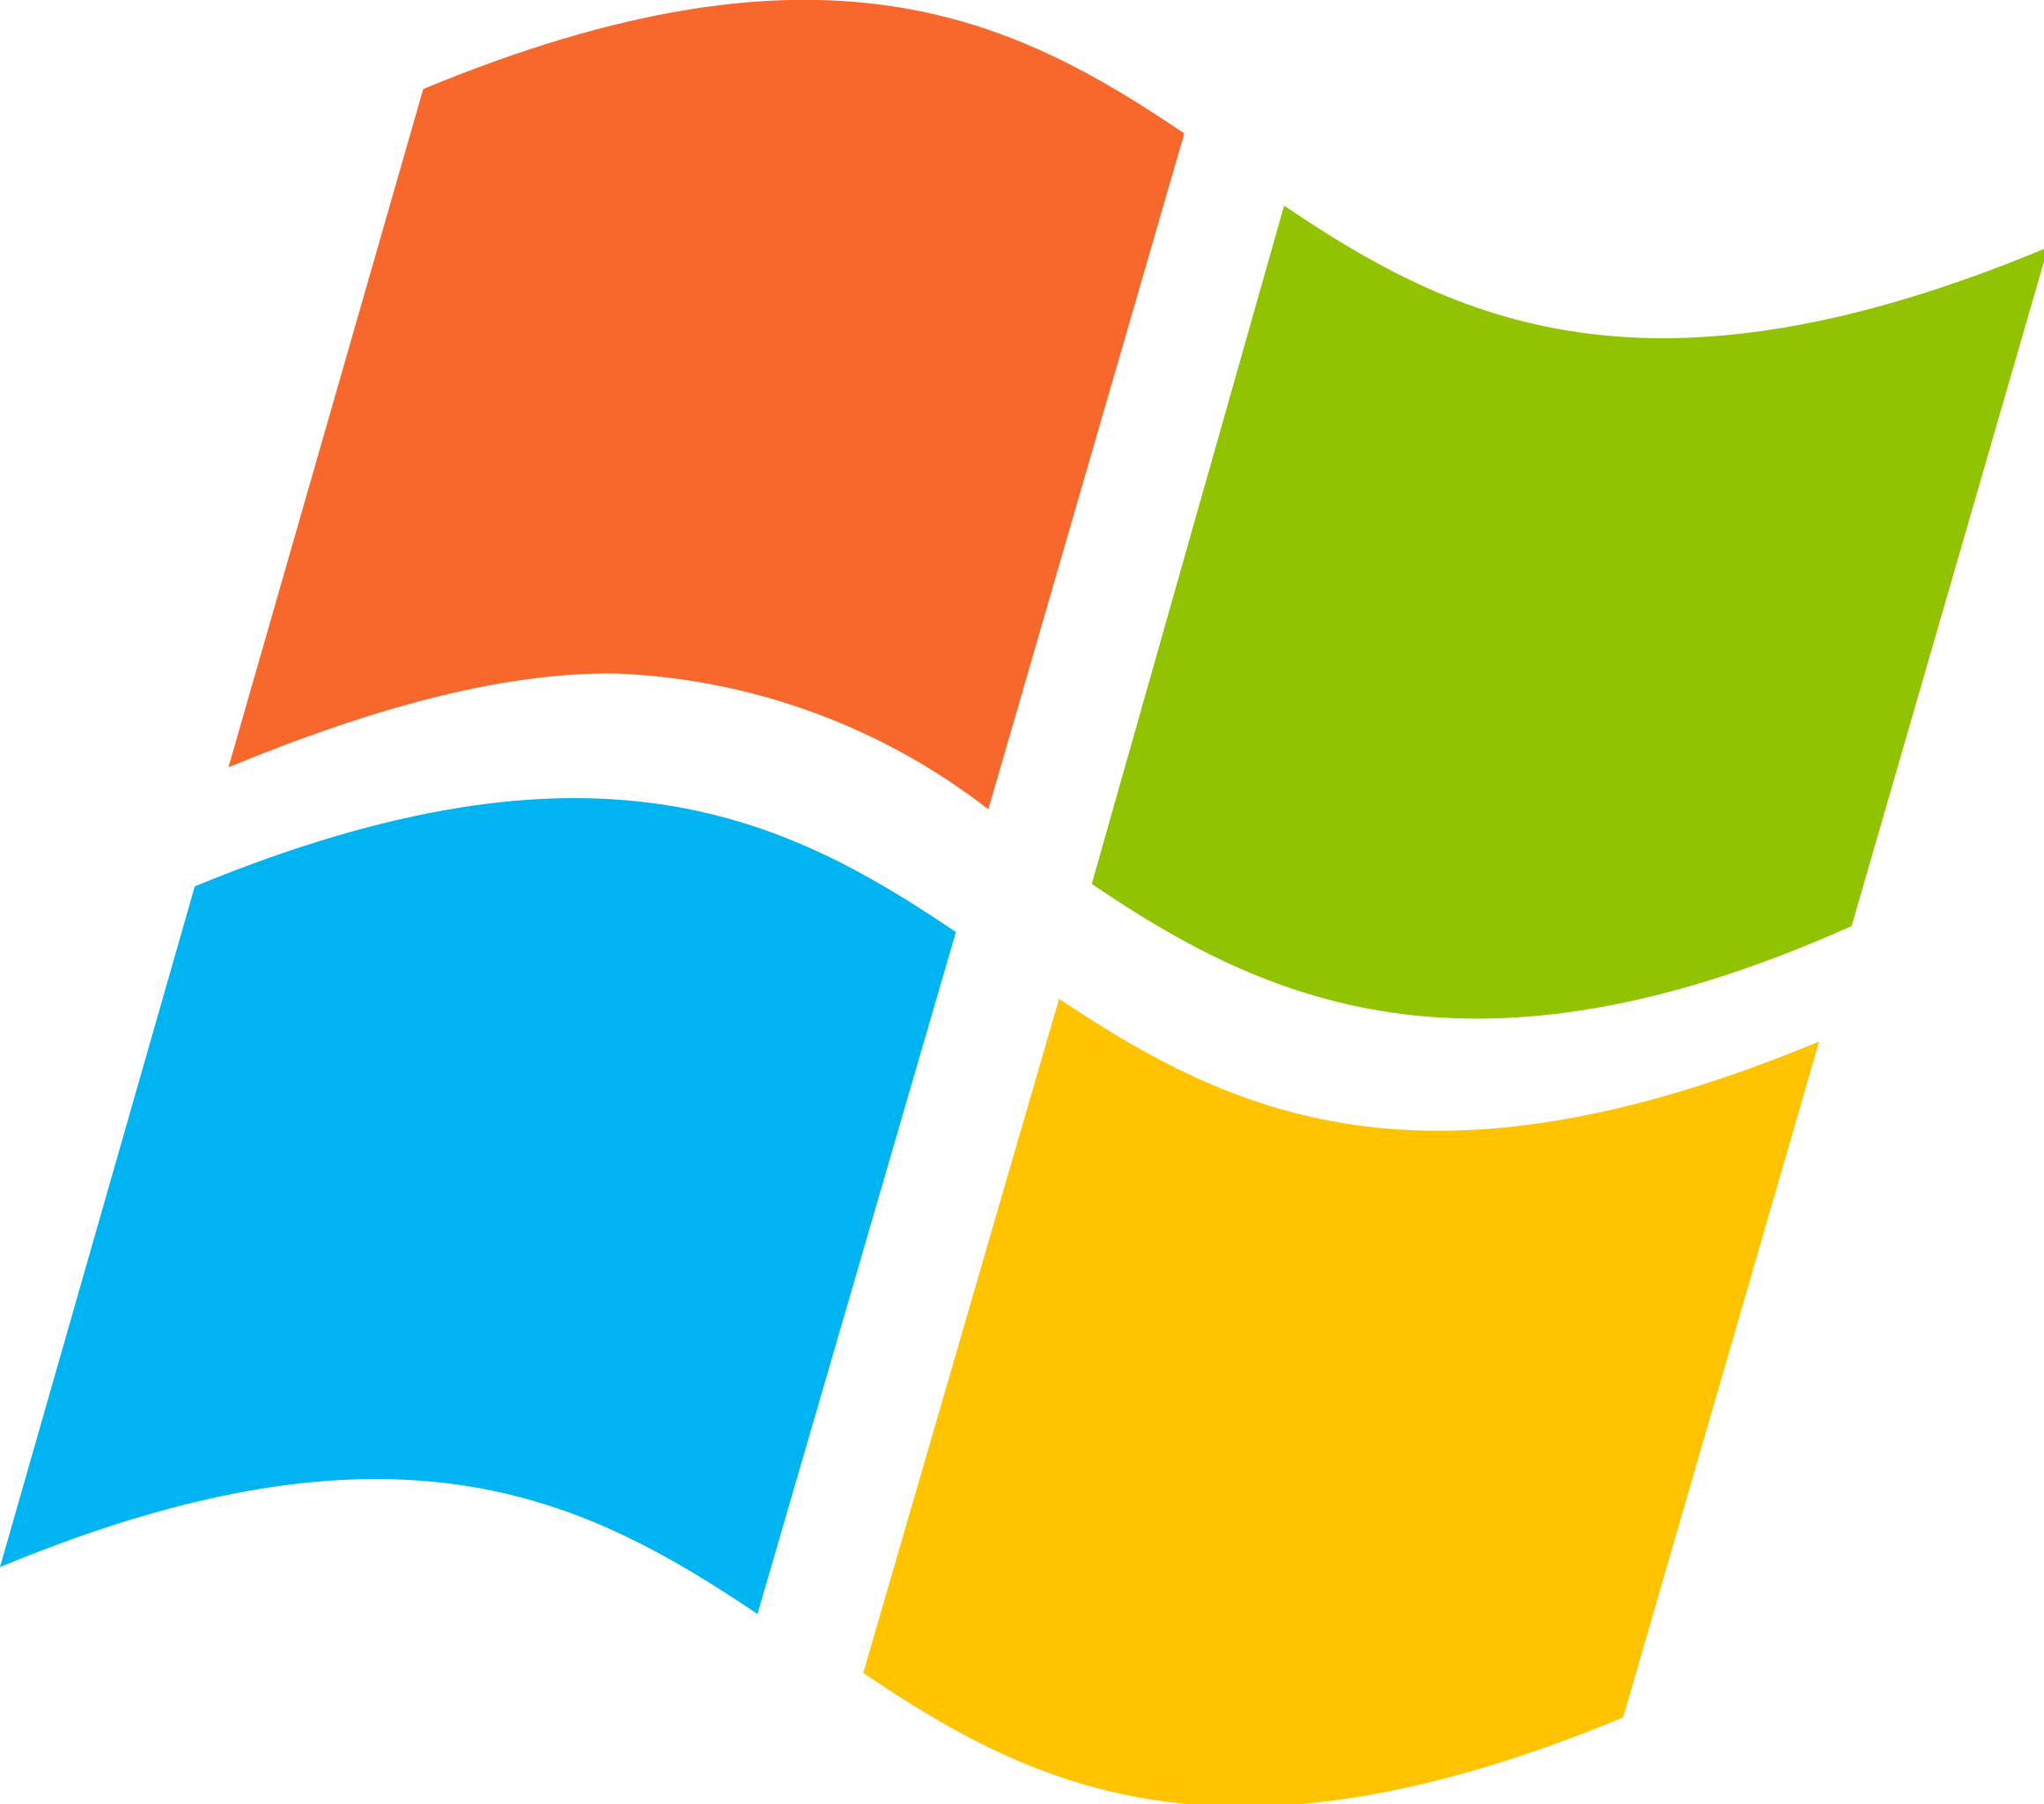 A Windows logo